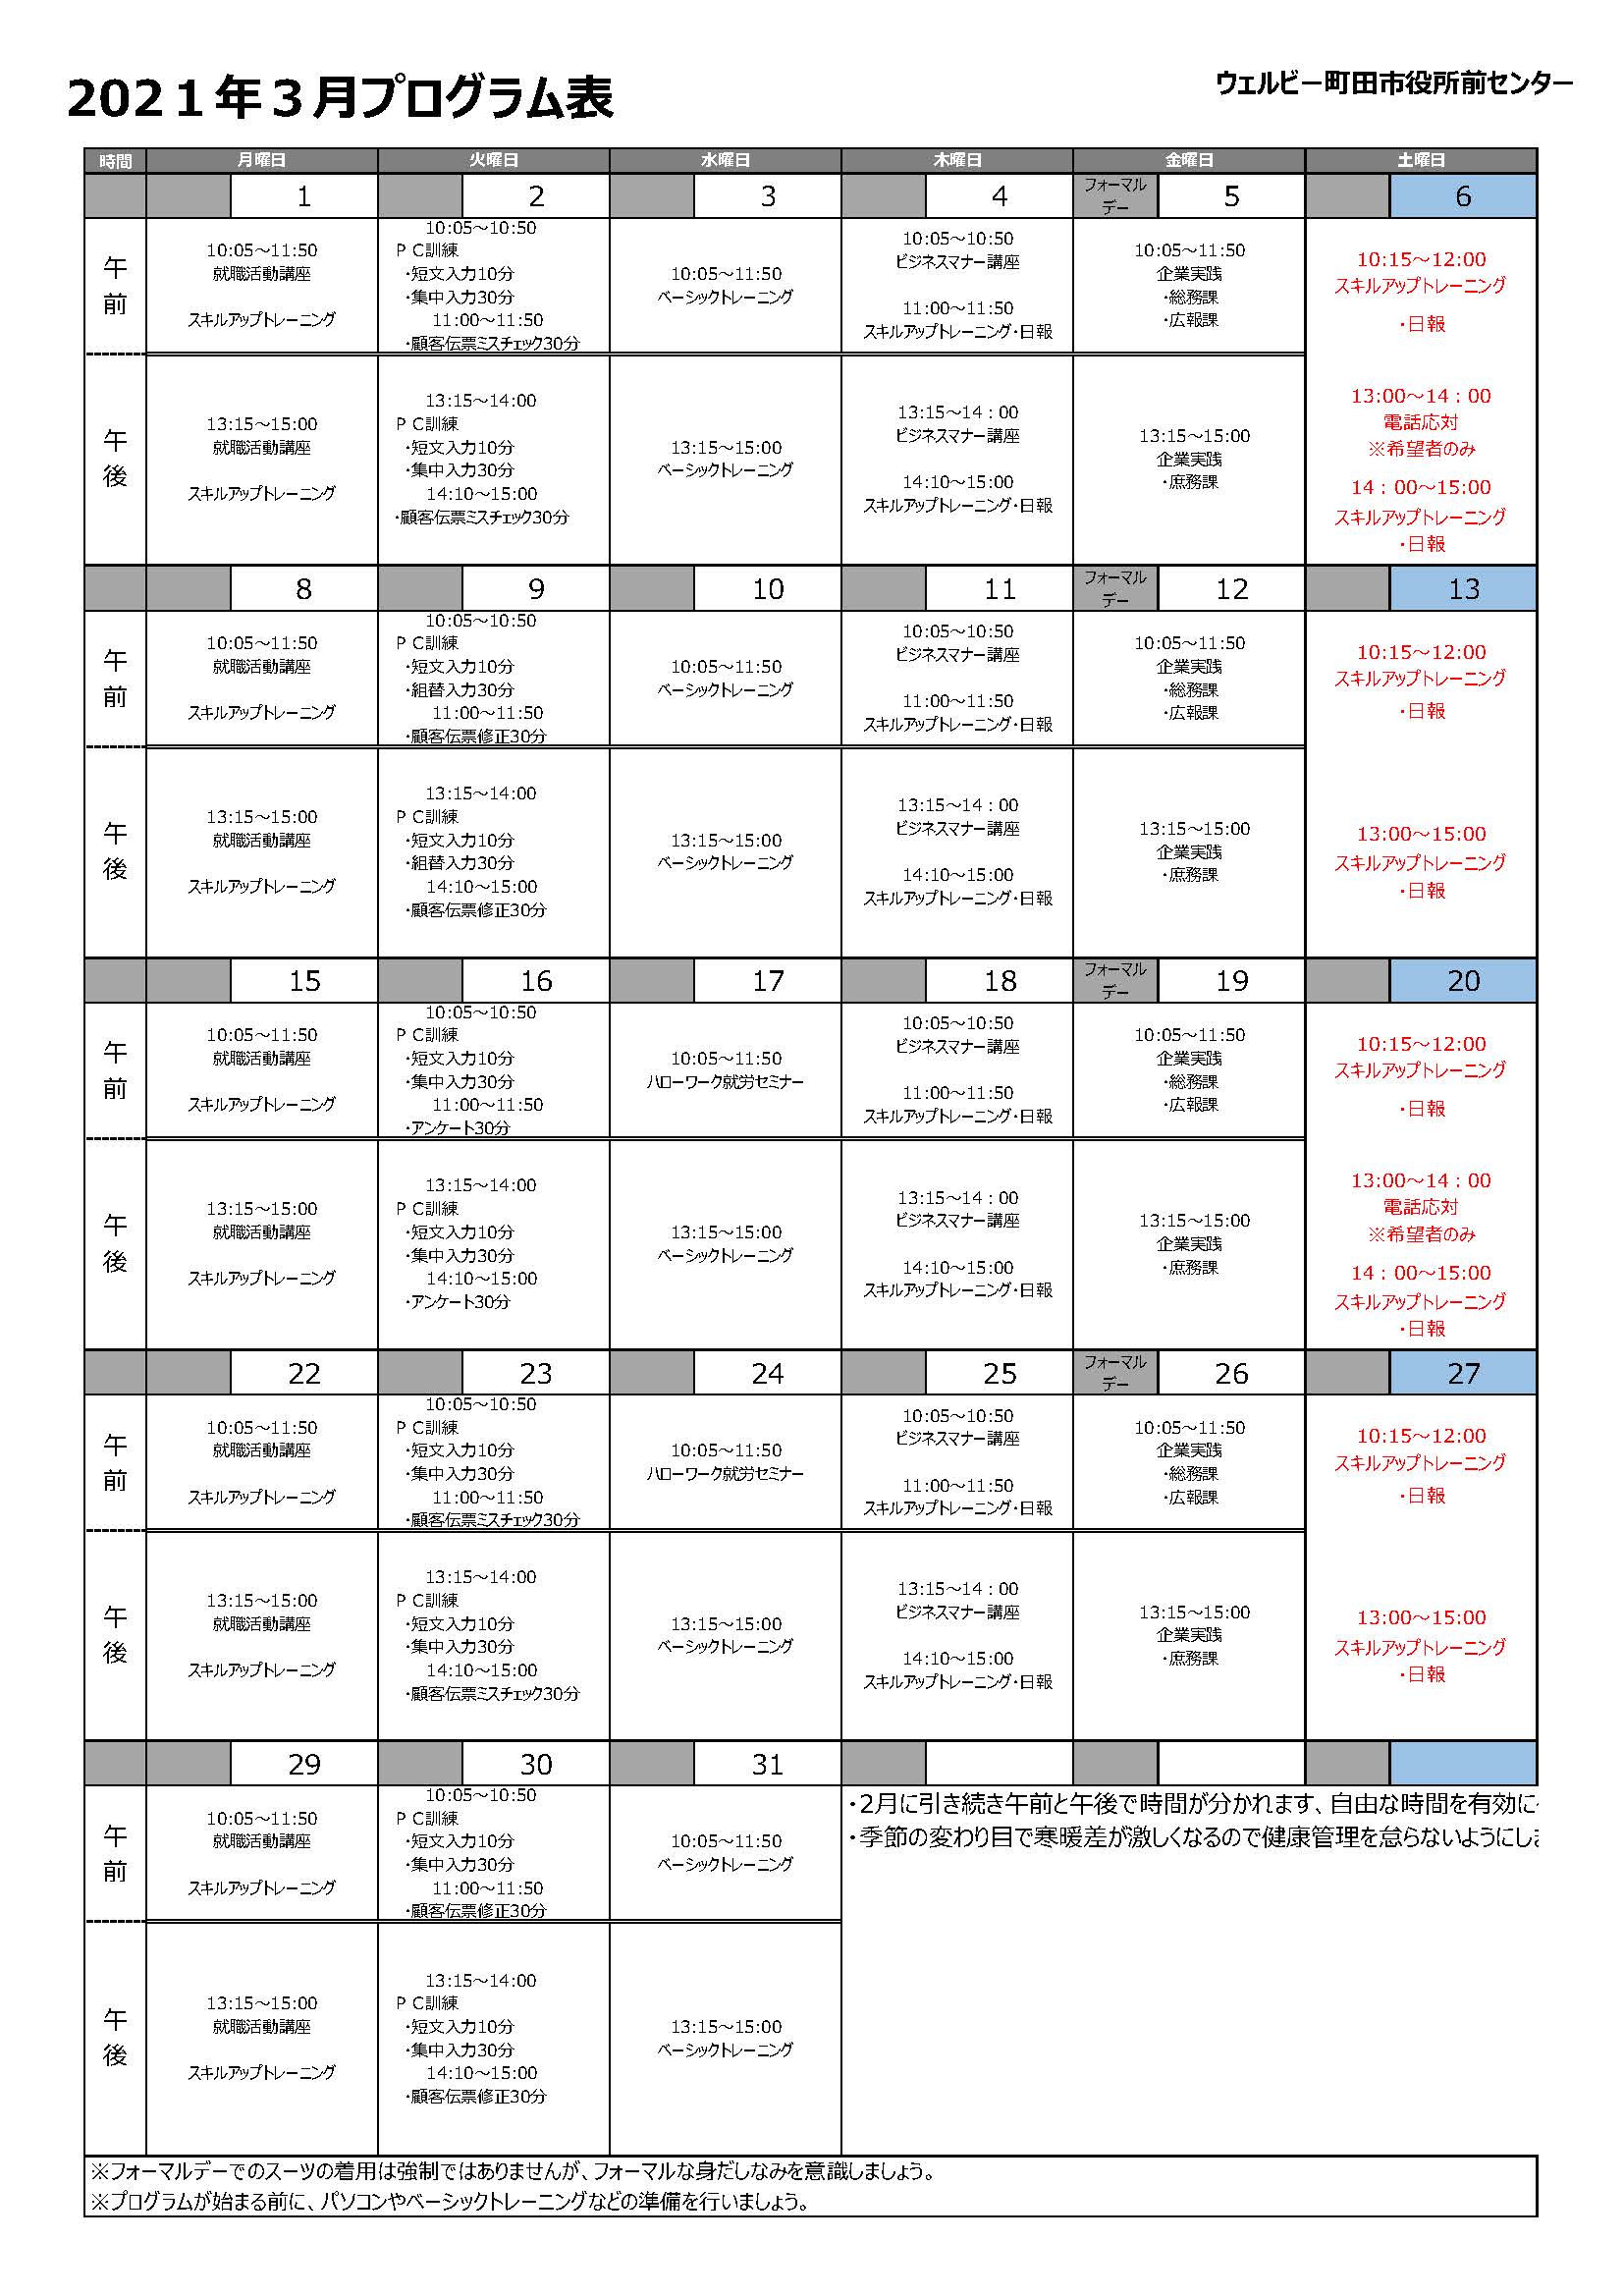 町田市役所前センター3月プログラム表